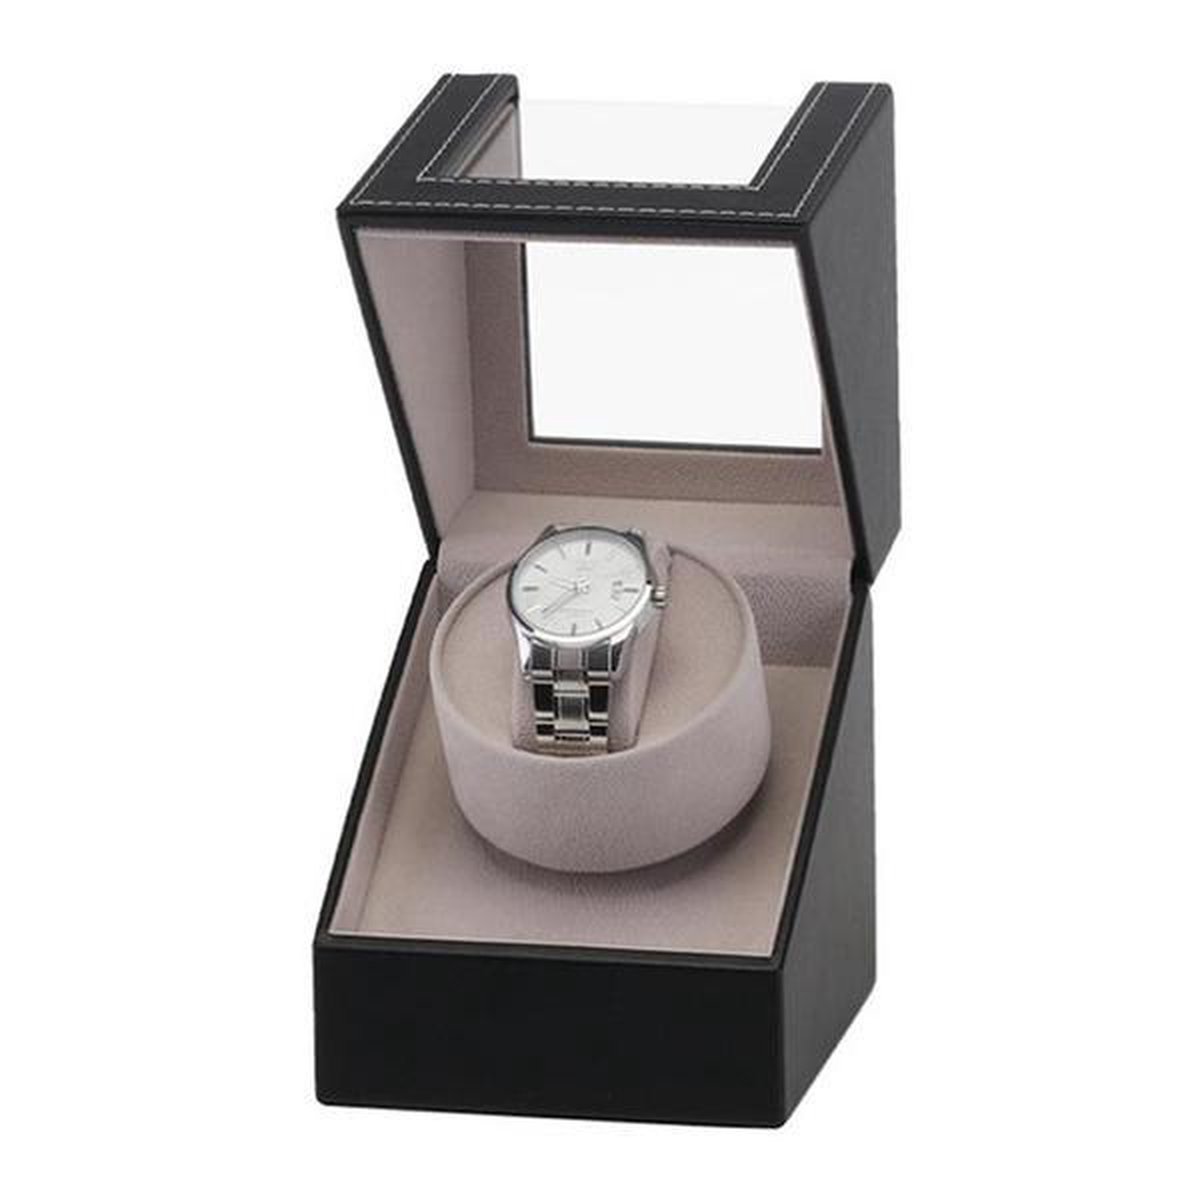 Watchwinder - Horloge Opwinder - Automatische horloge opwinder doos - Watchbox - opbergbox voor 1 horloge - Zwart